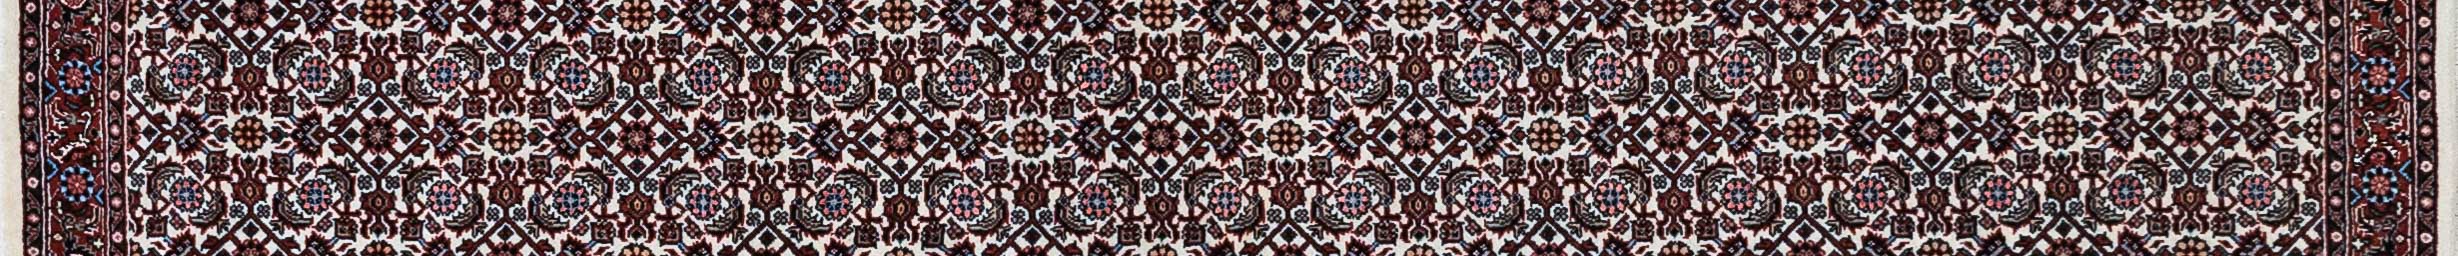 Bidjar Persian Carpet Rug N1Carpet Canada Montreal Tapis Persan 1290